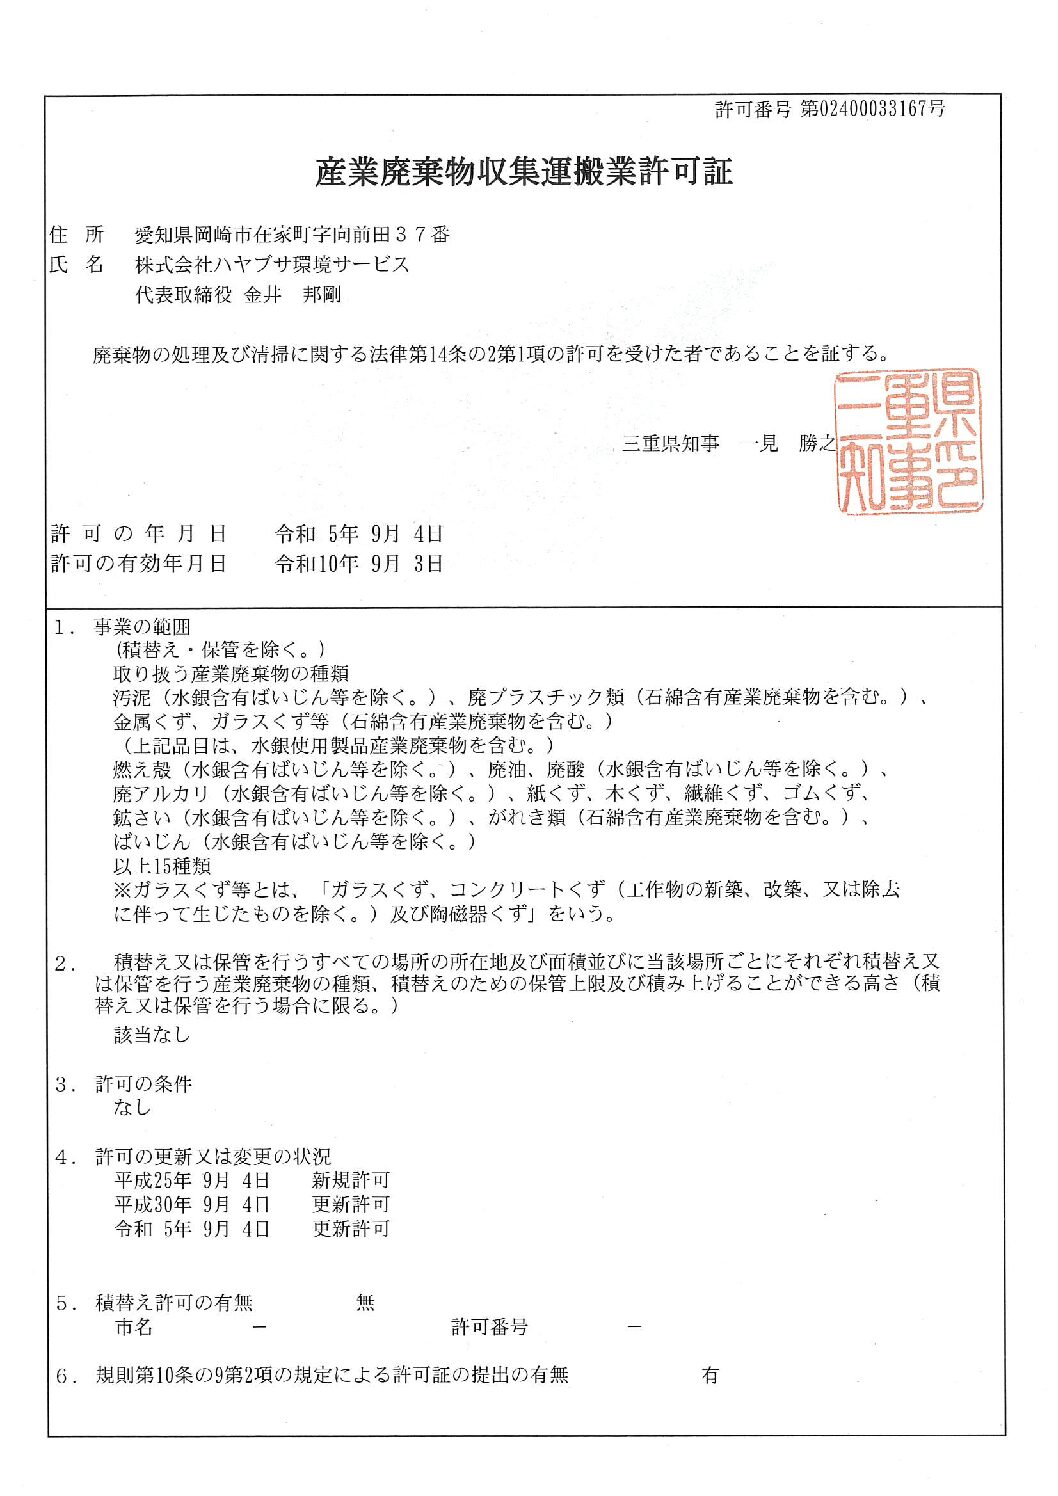 三重県　収集運搬業許可証を更新しました。